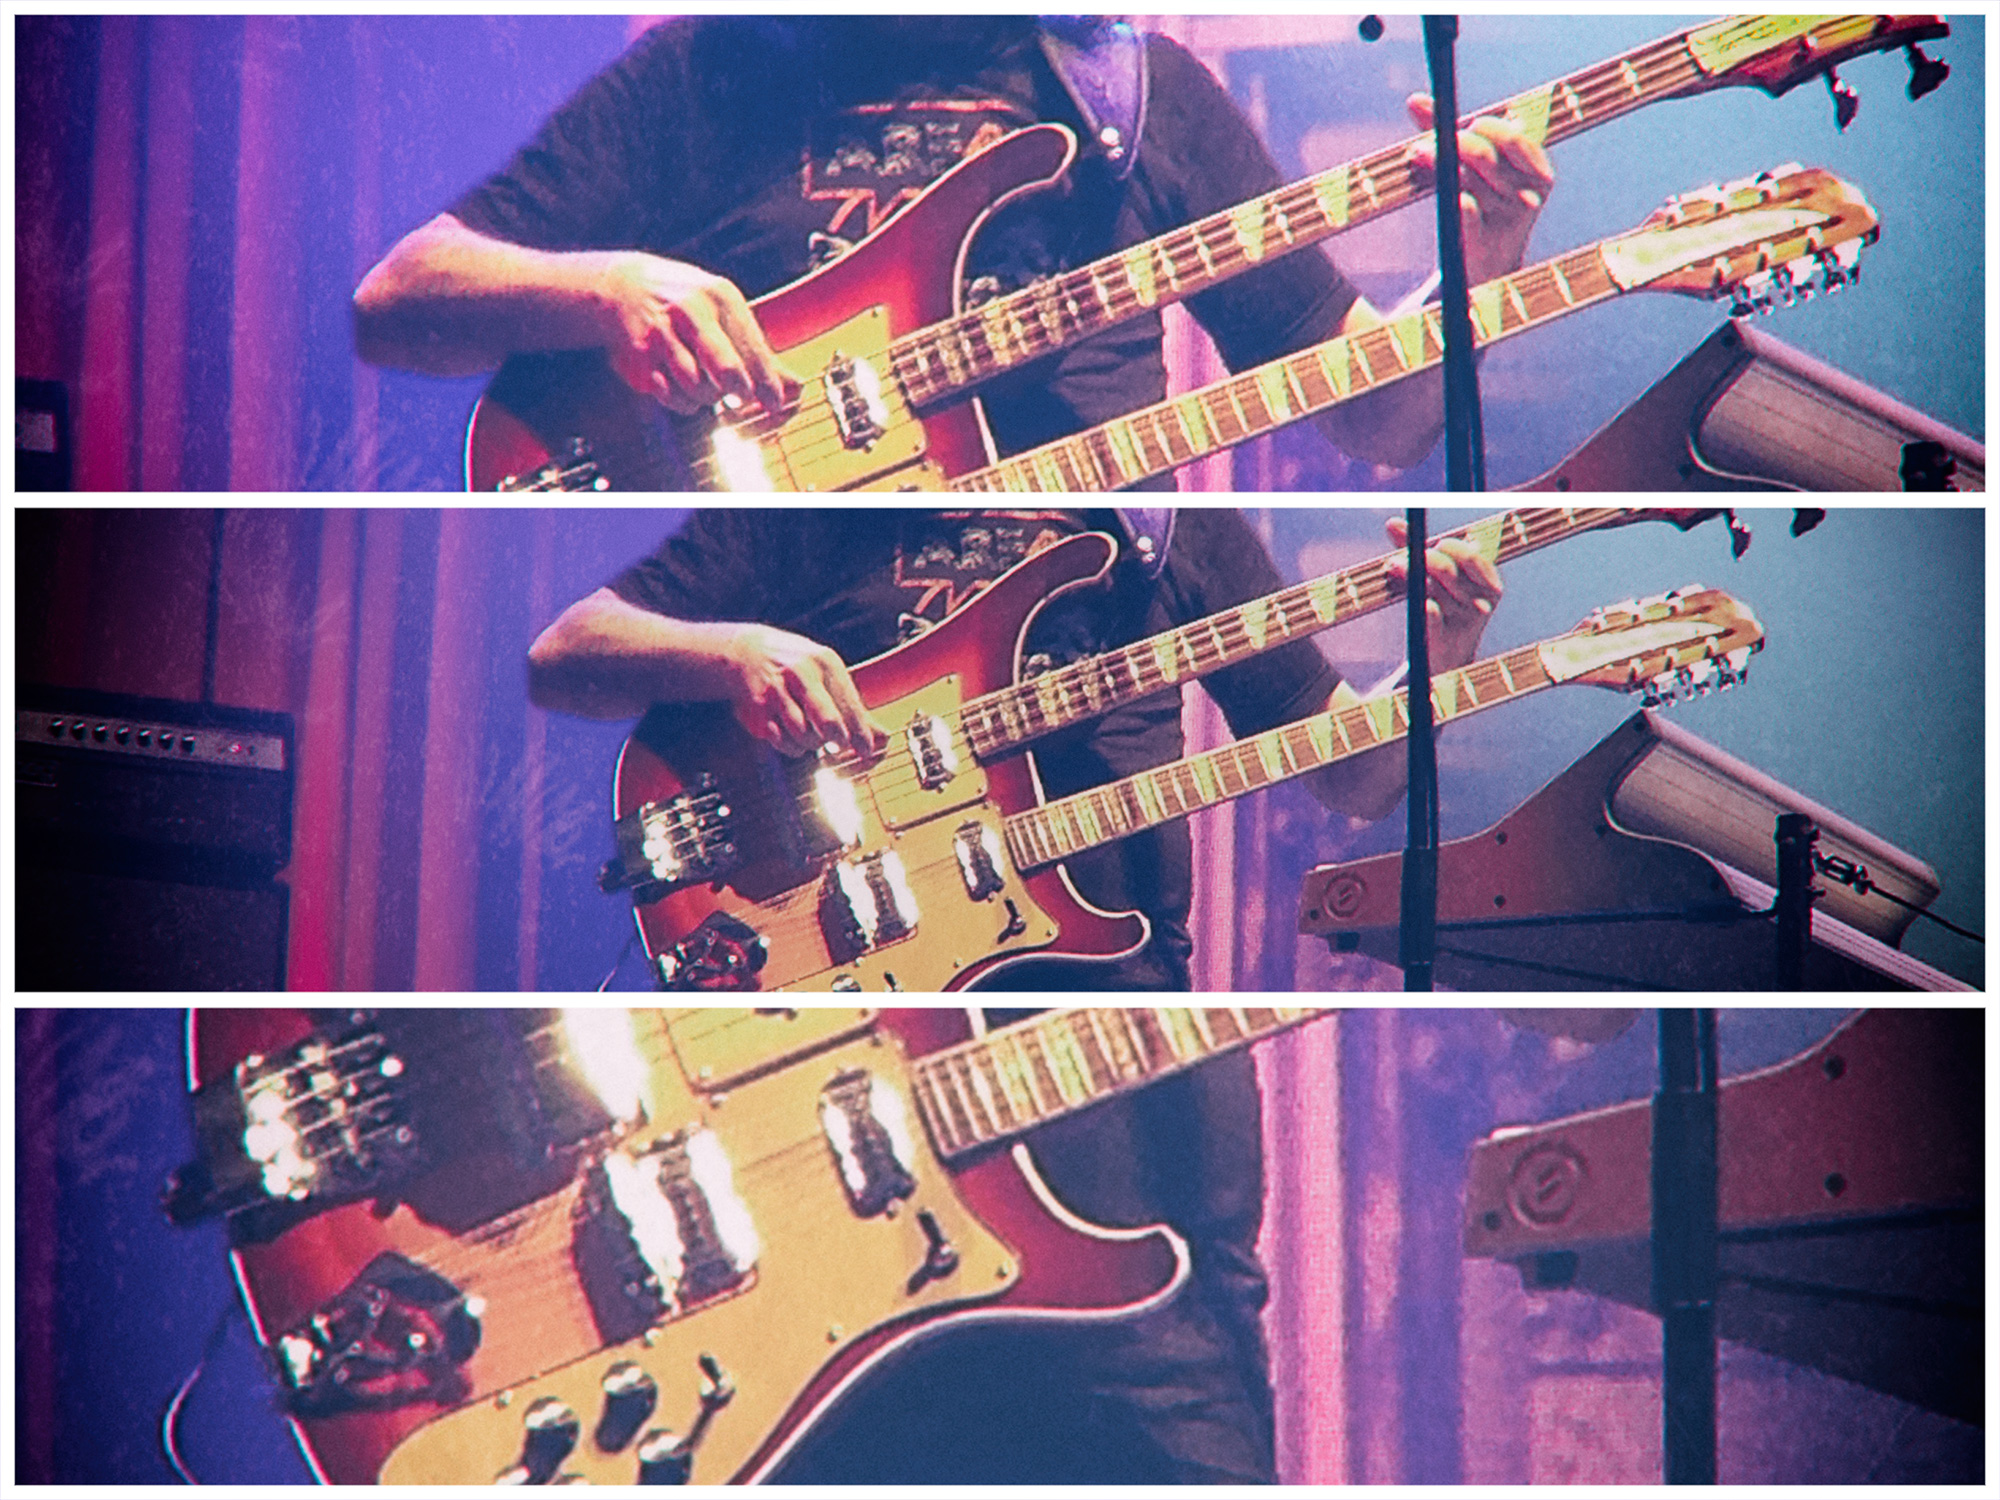 Rush: R40 Live Tour 2015, Bok Centre, Tulsa, OK